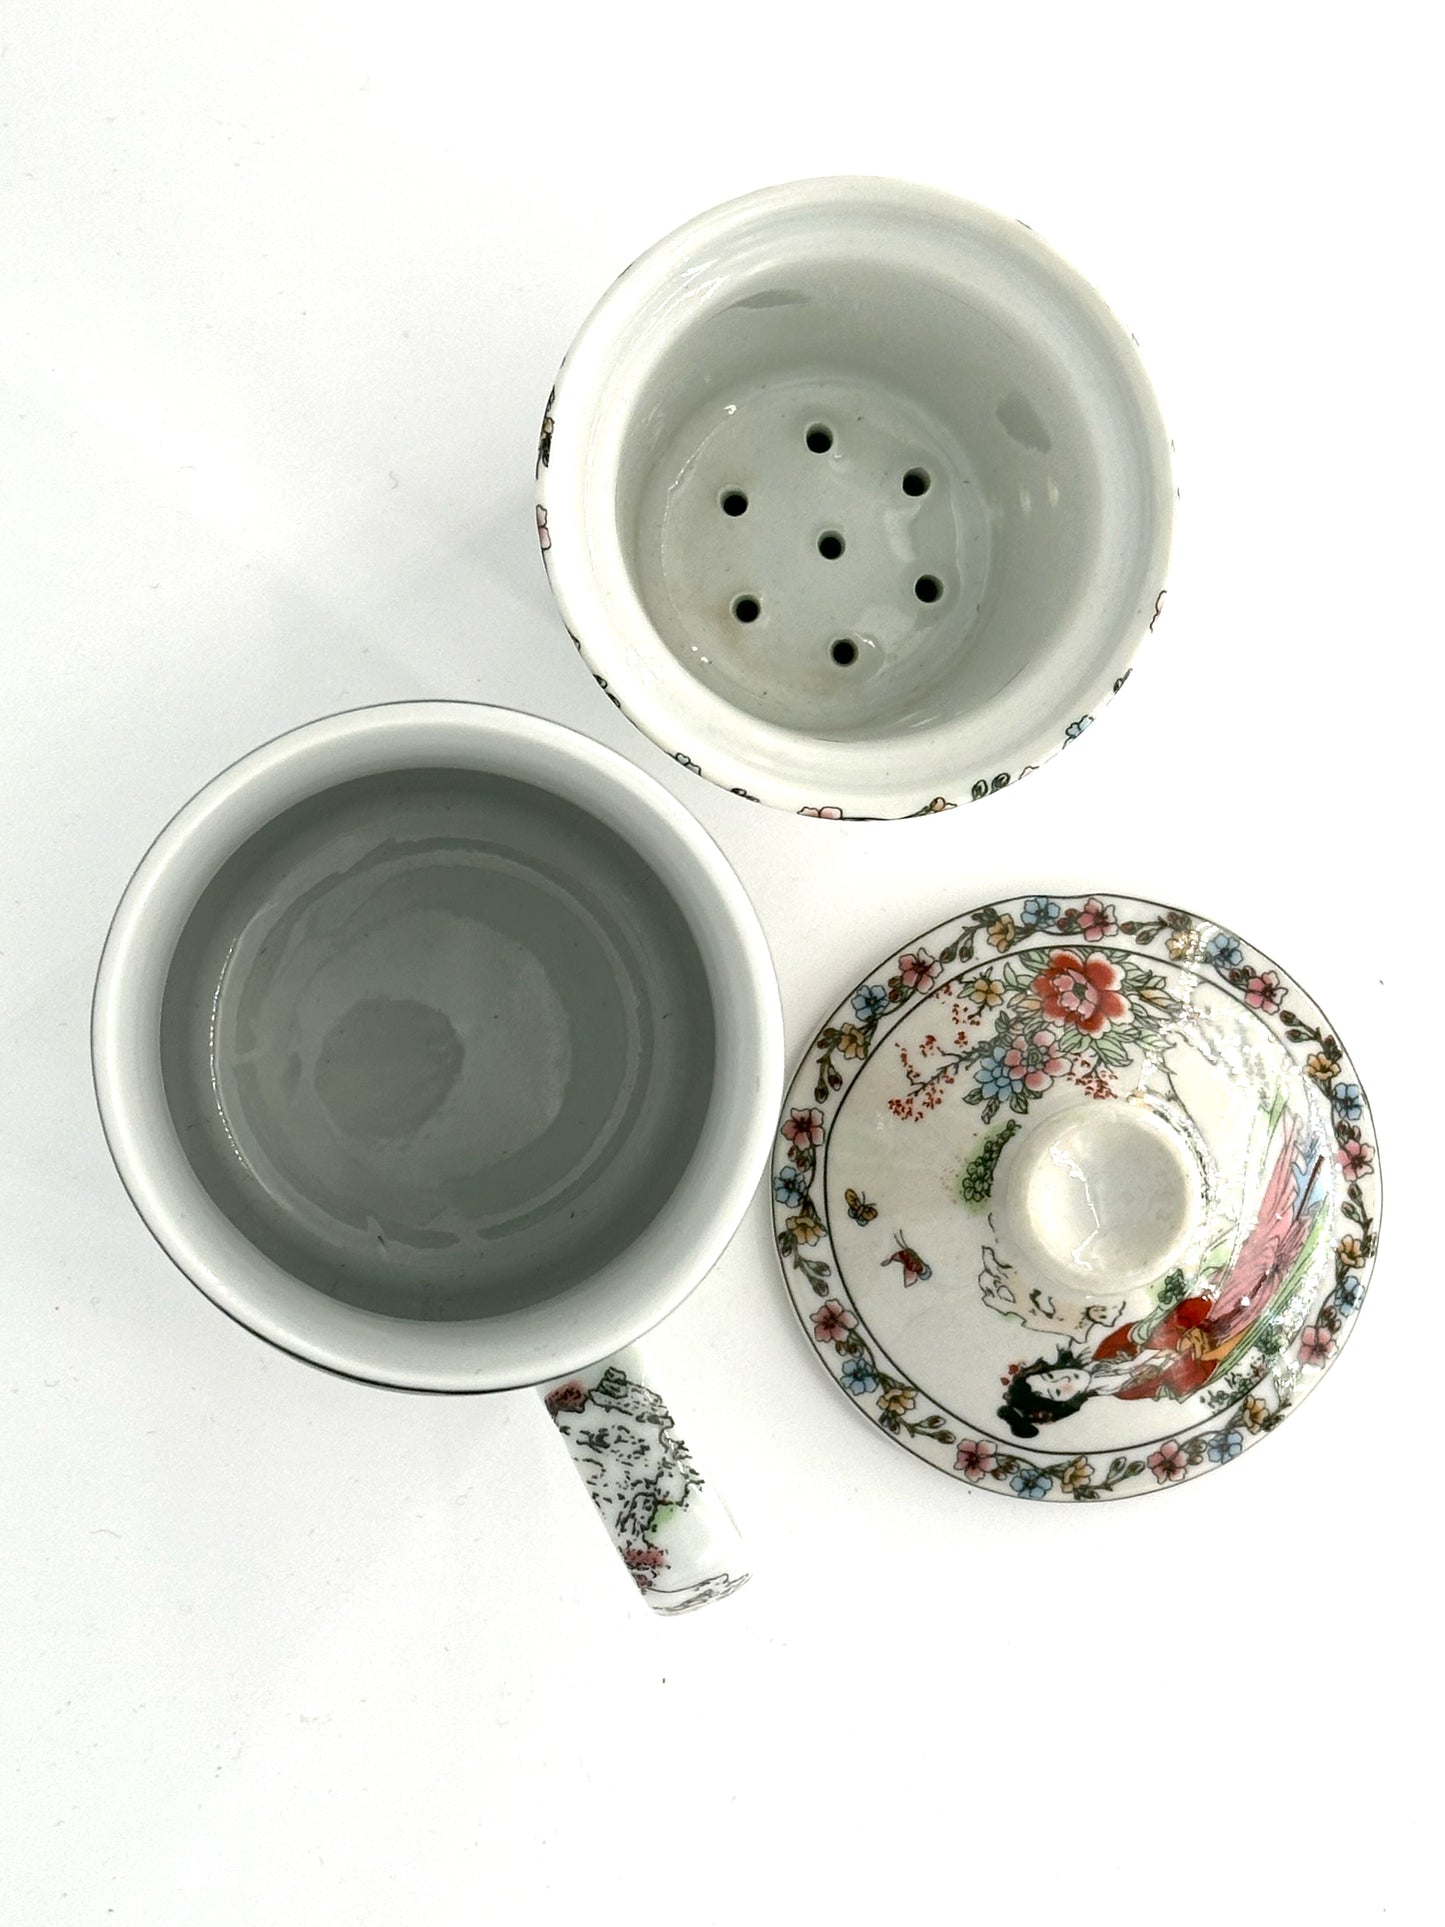 Ladies in a garden - Ceramic Art Tea Mug